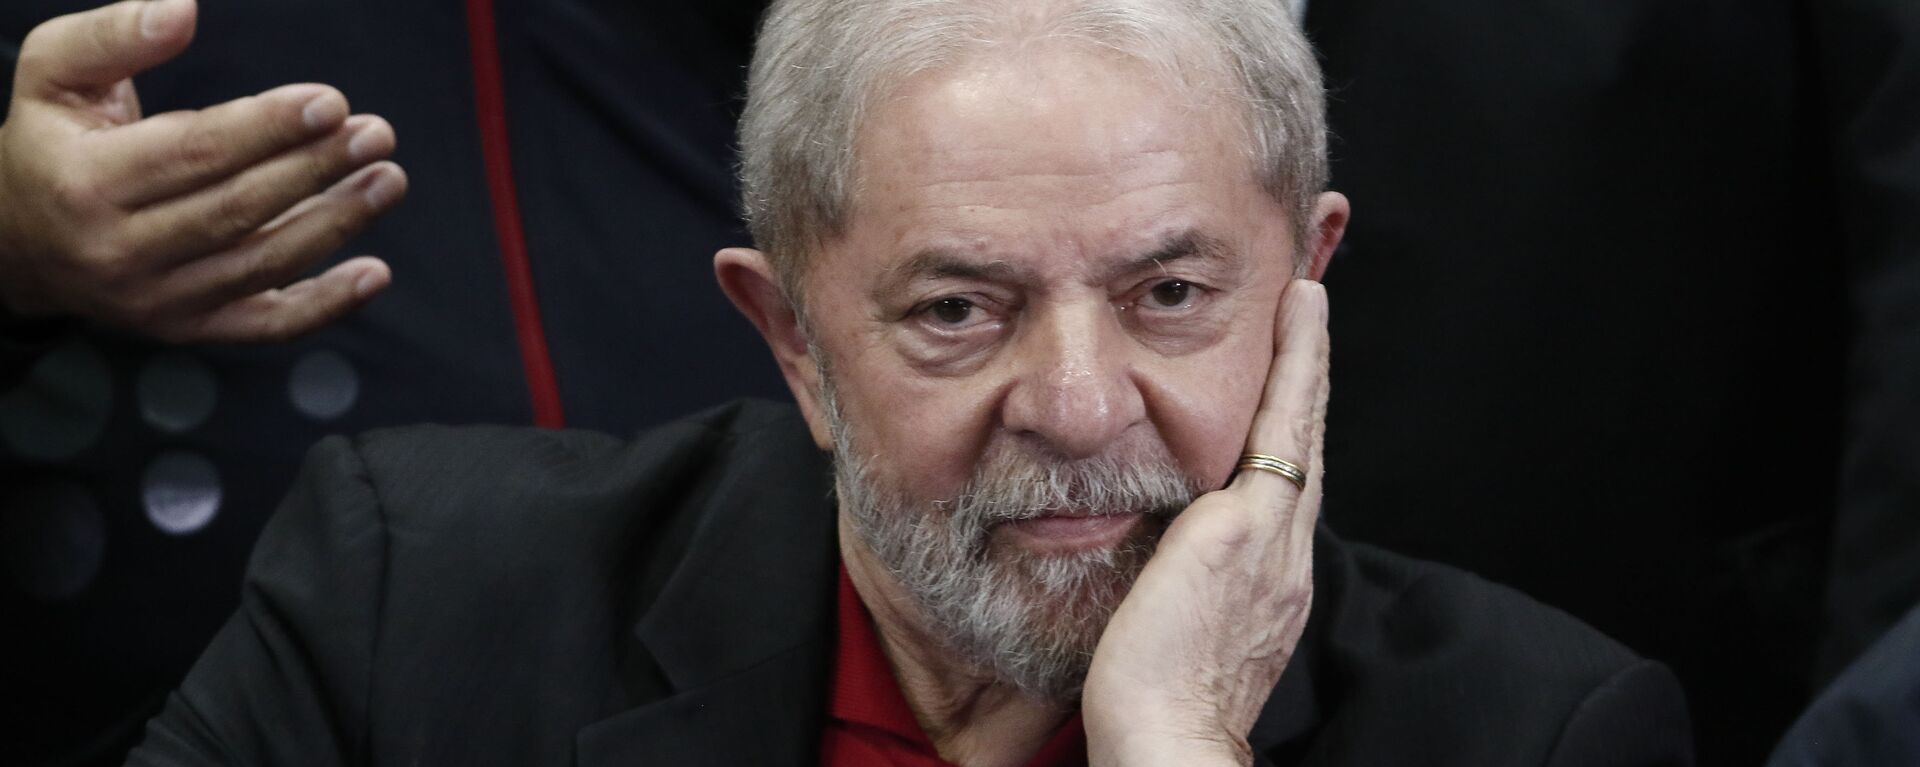 Luiz Inácio Lula da Silva, expresidente brasileño - Sputnik Mundo, 1920, 27.12.2021